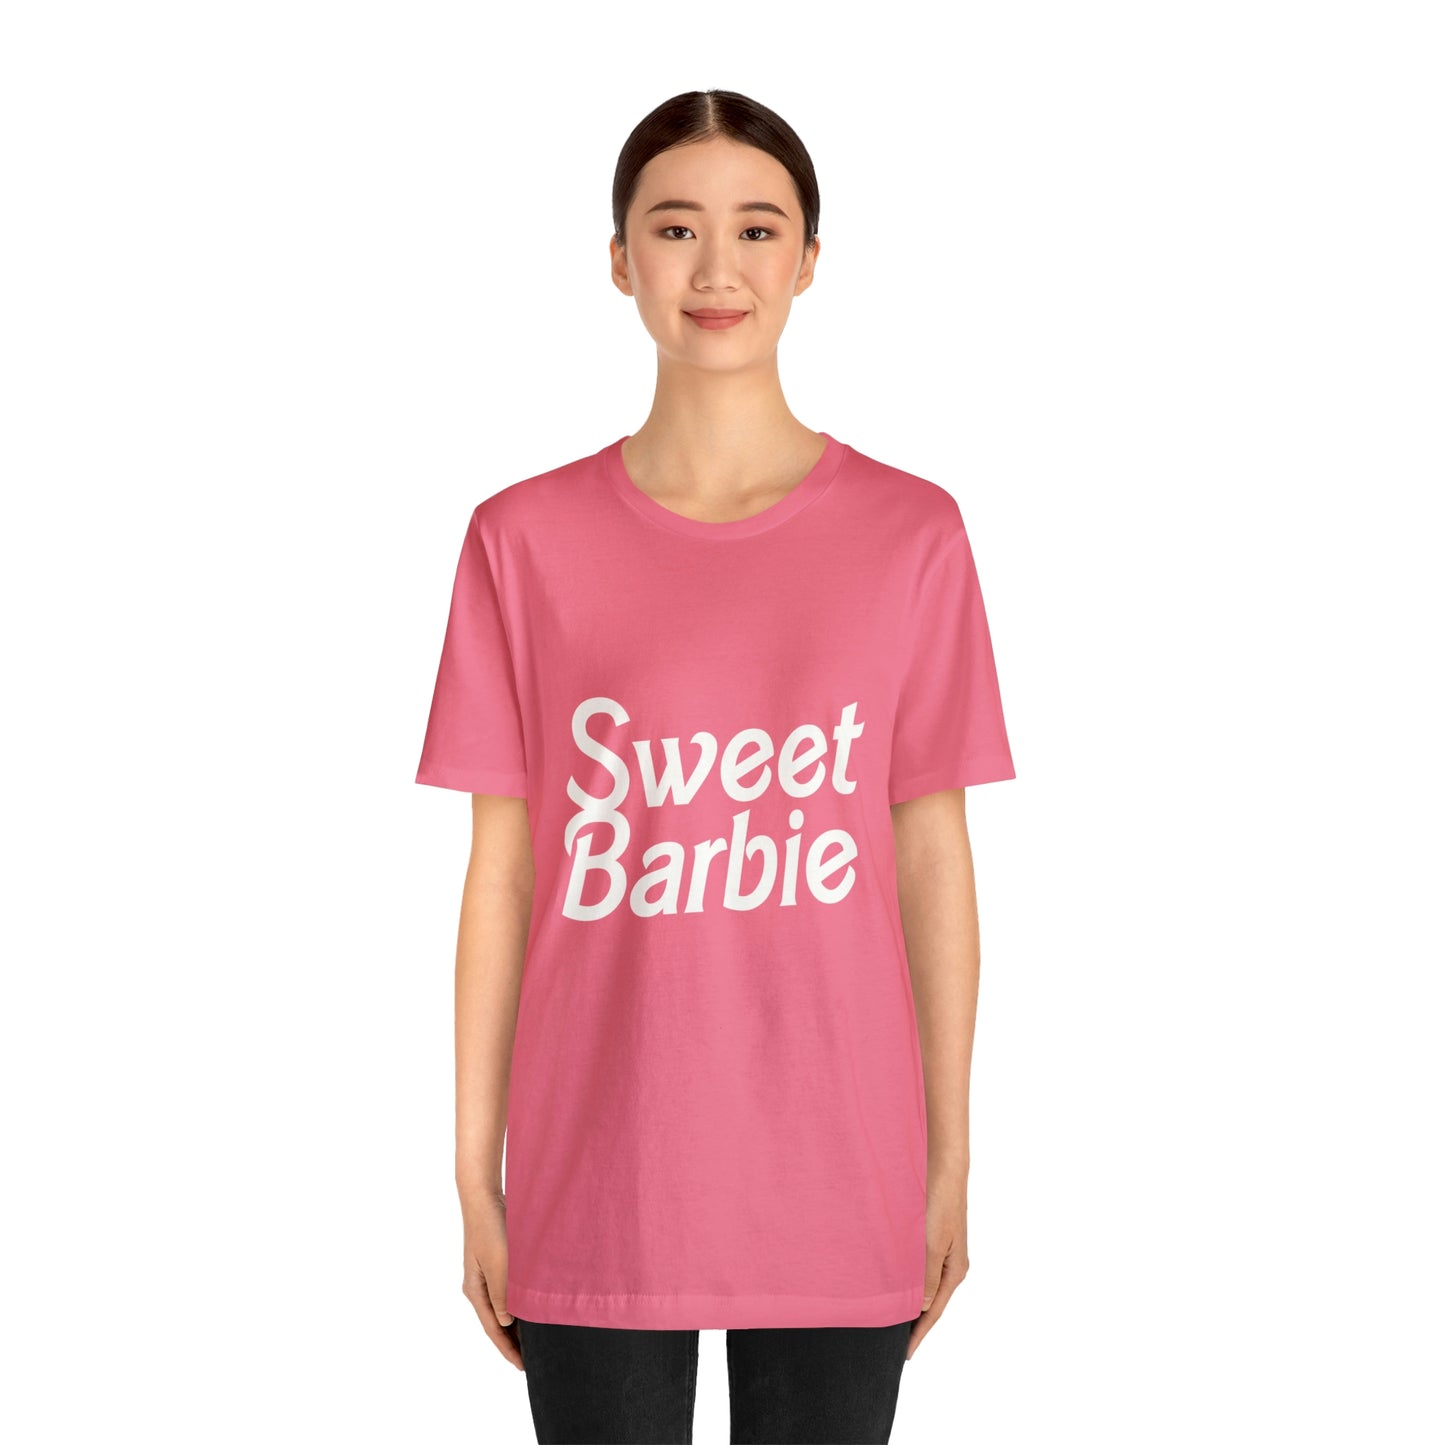 Sweet Barbie